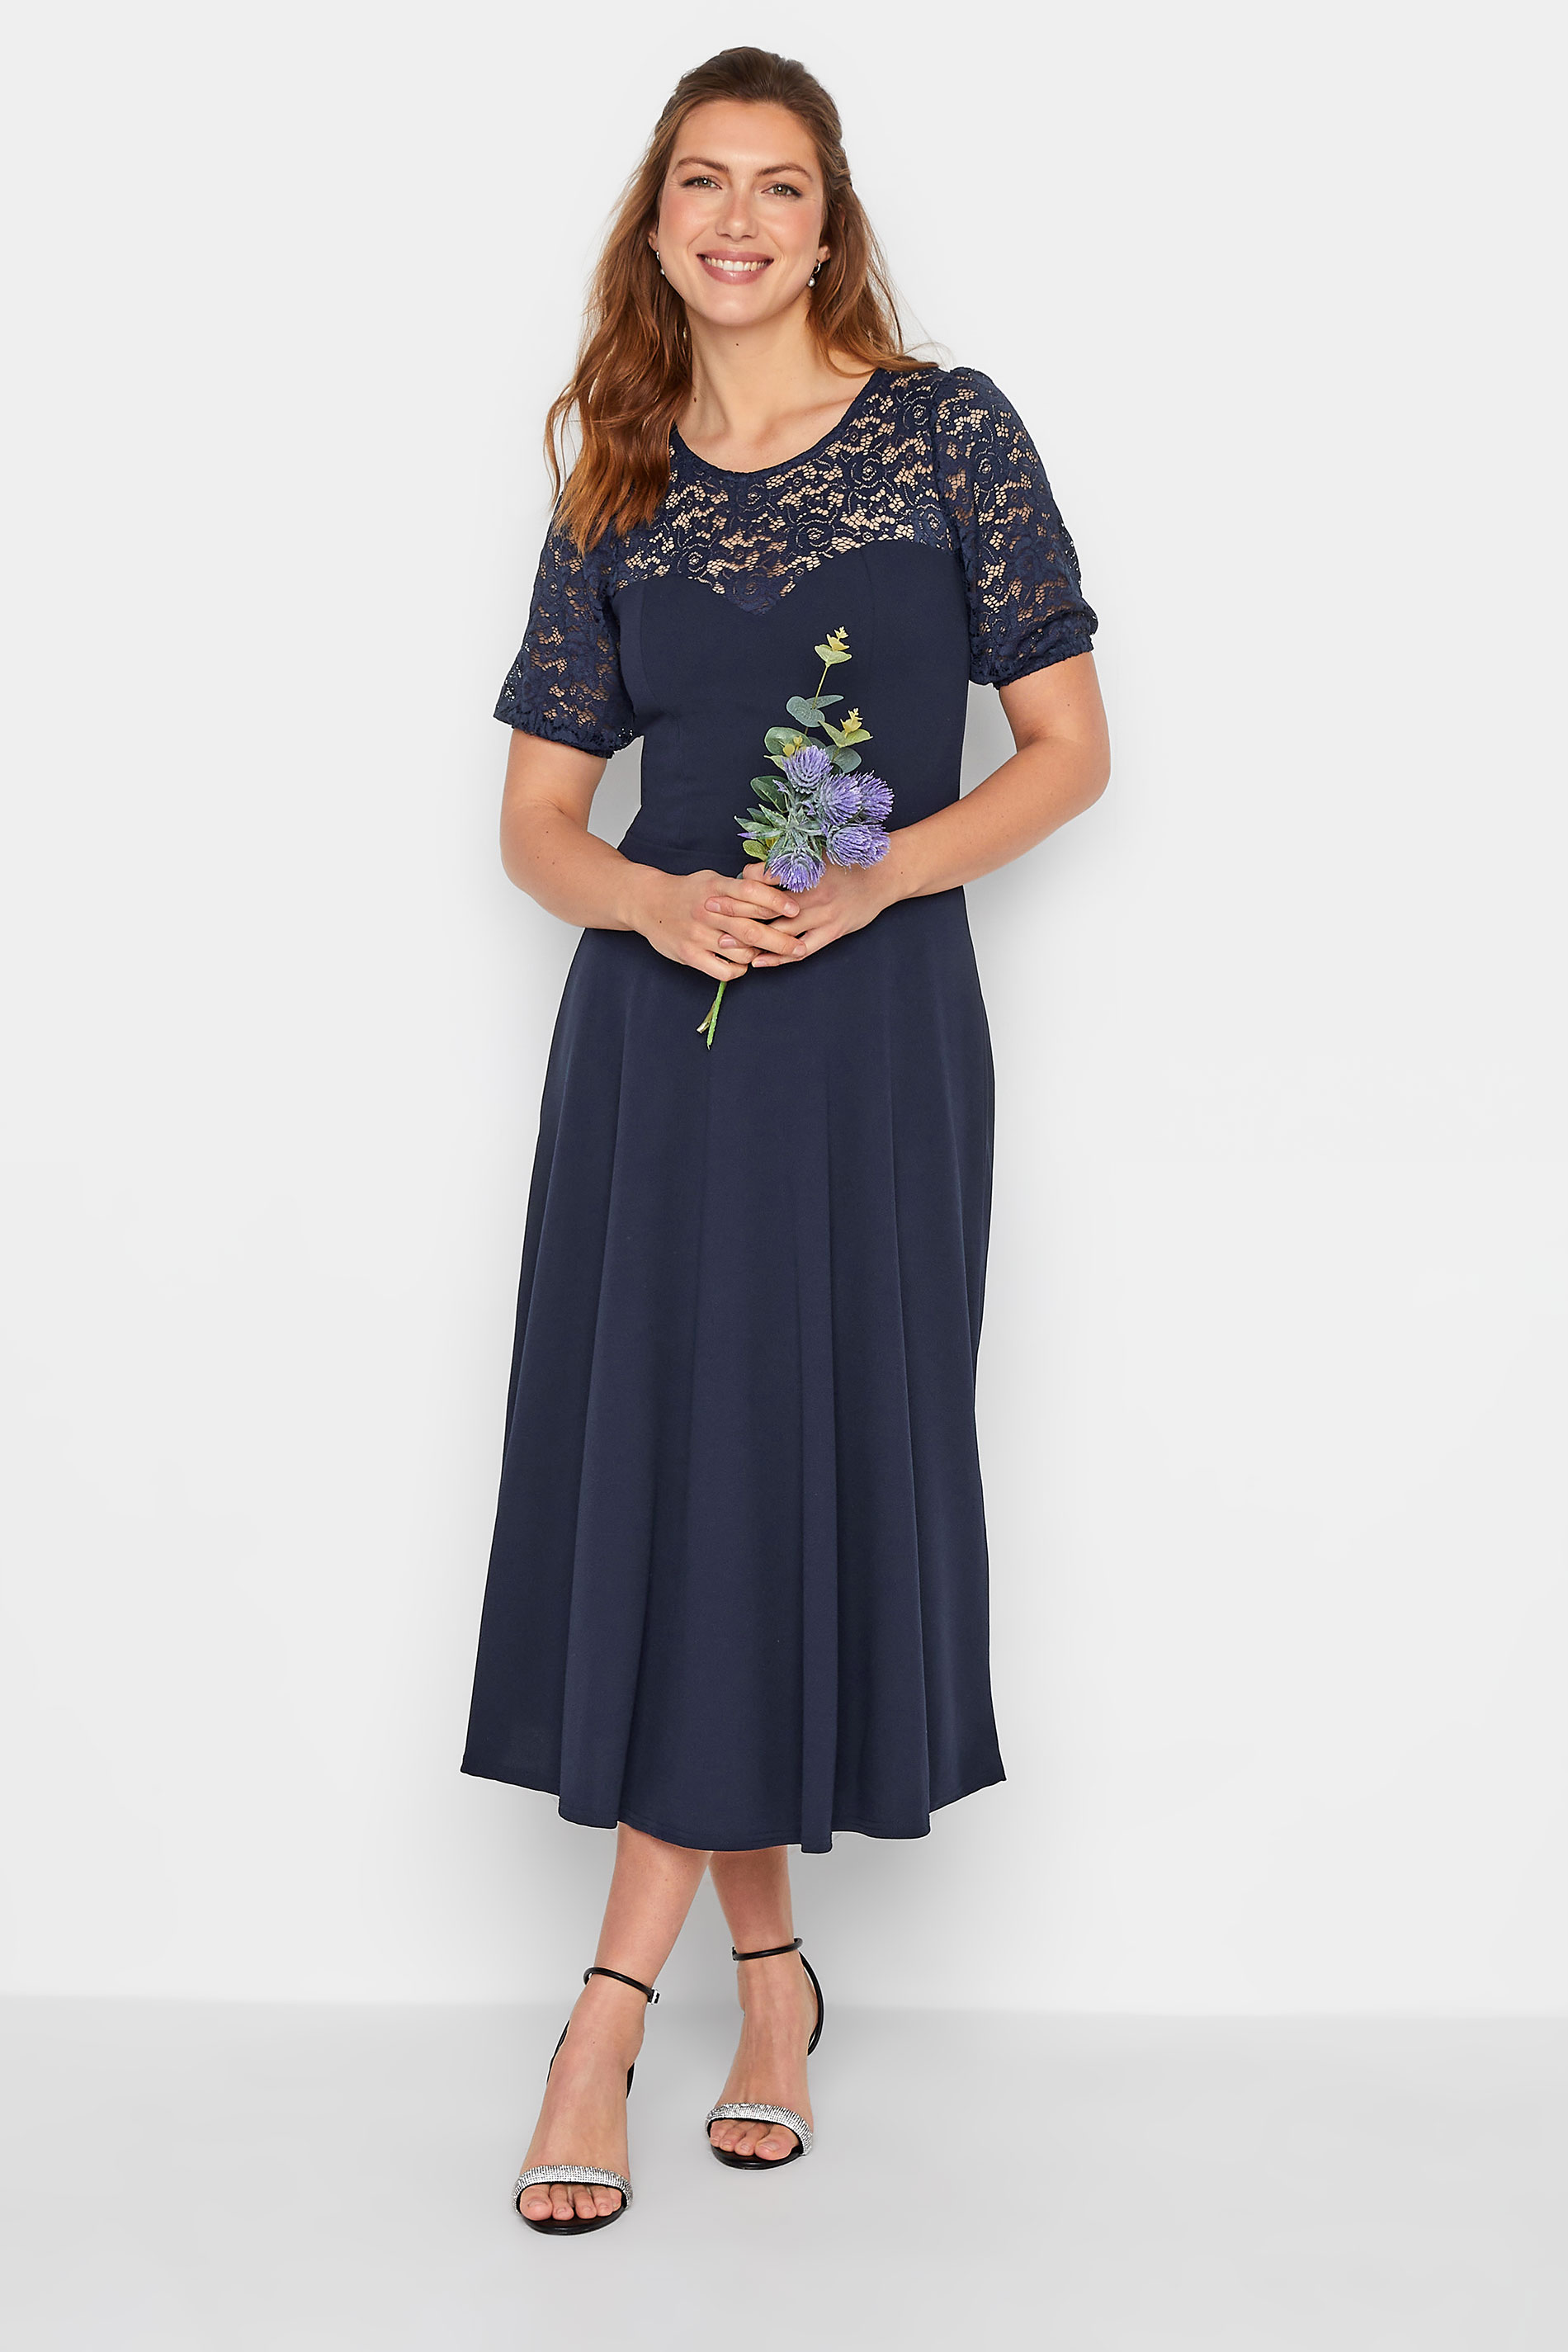 Tall Women's LTS Dark Blue Lace Midi Dress | Long Tall Sally